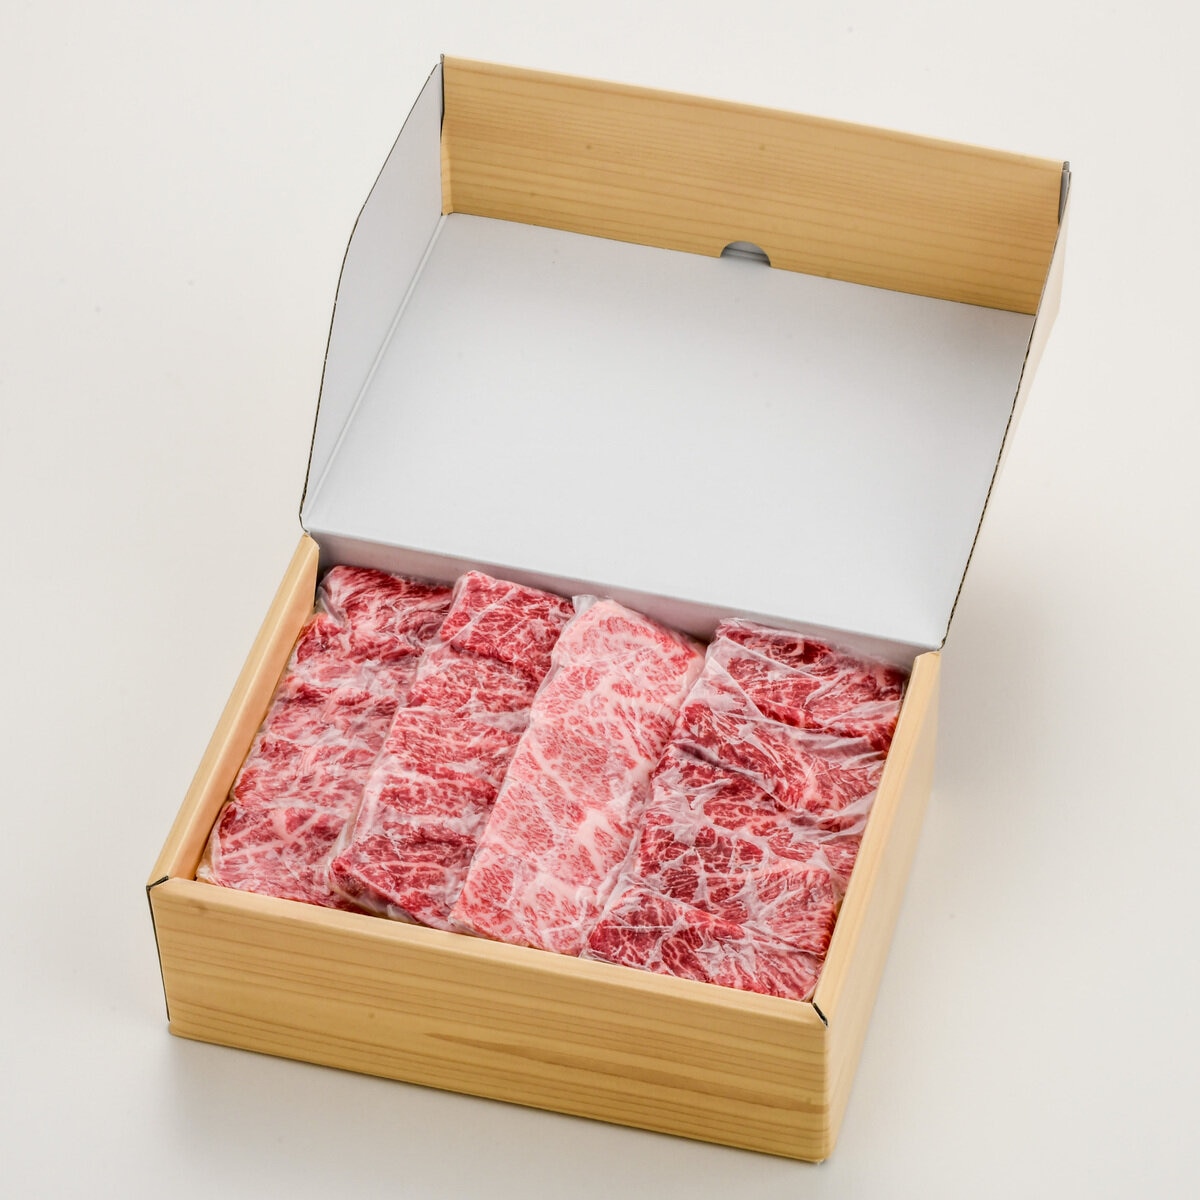 【冷凍】米沢牛 バラ焼肉用 400g